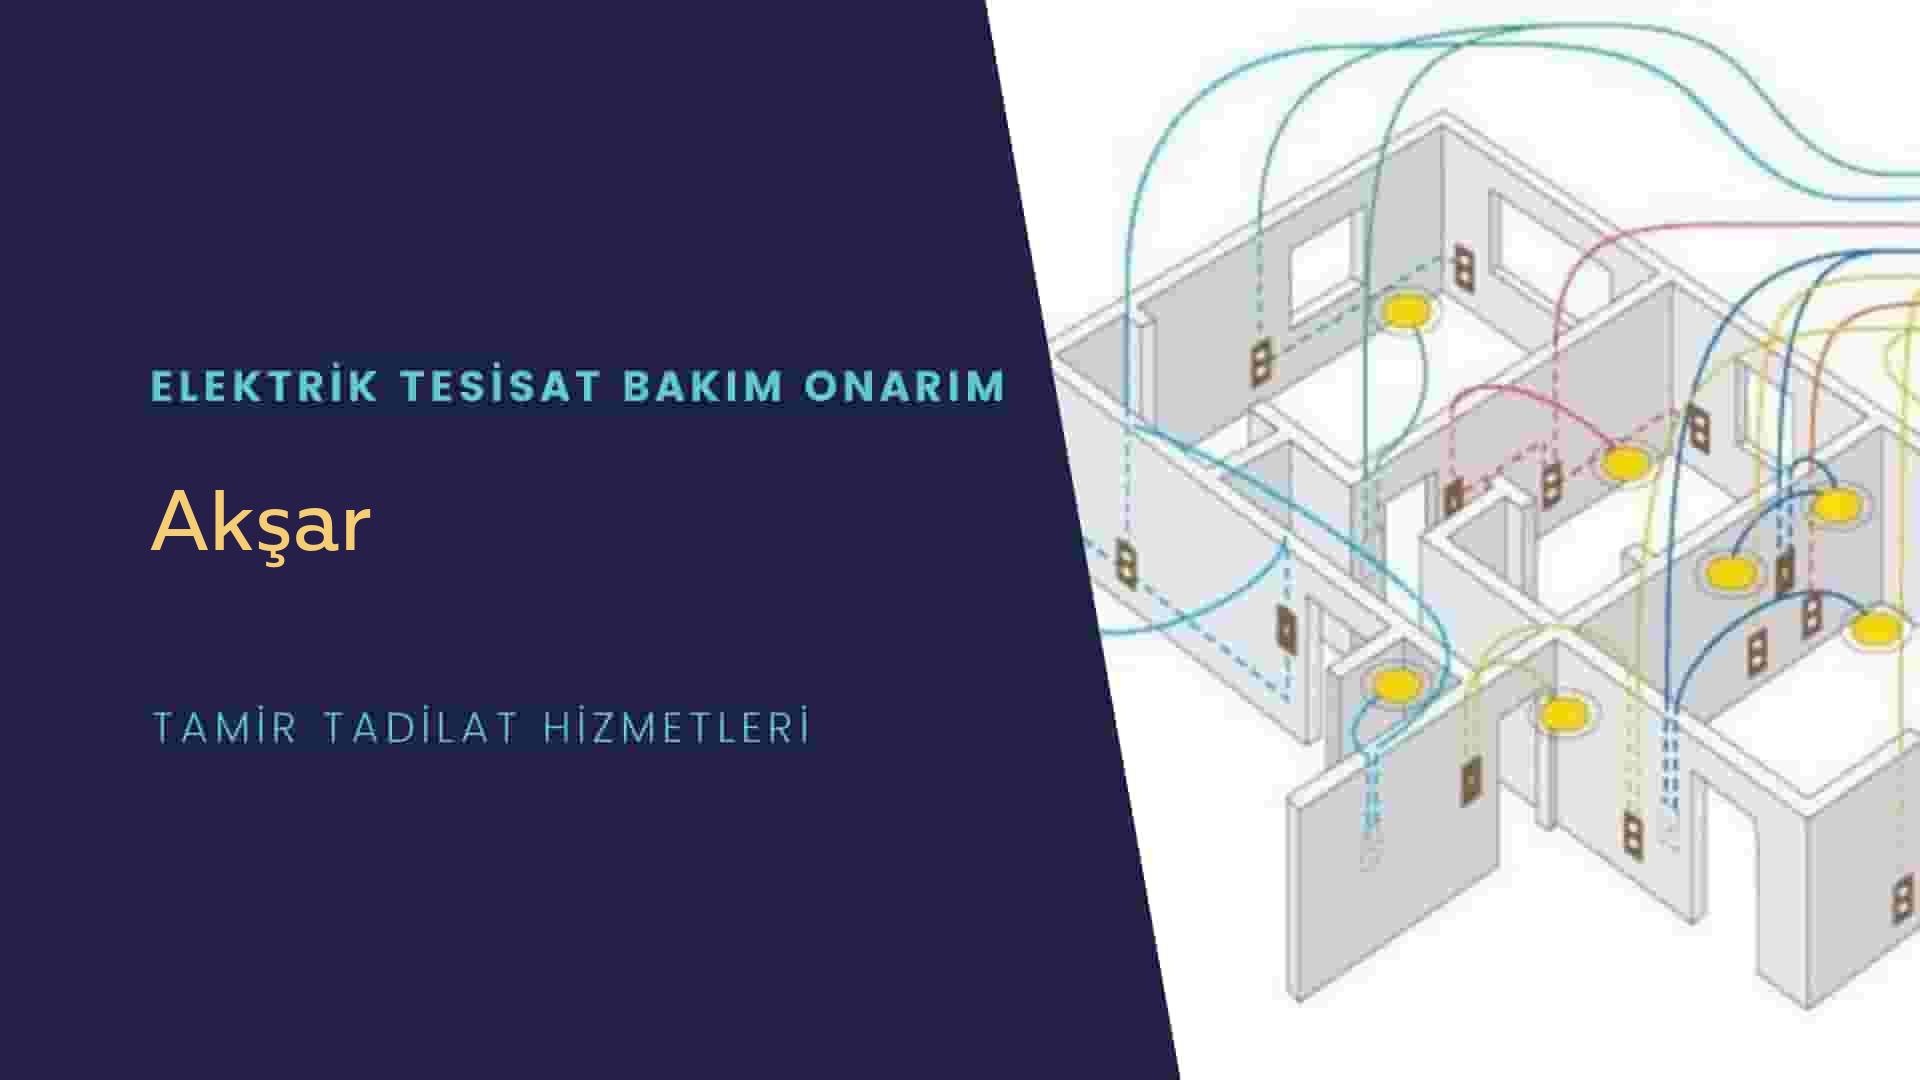 Akşar'da elektrik tesisatı ustalarımı arıyorsunuz doğru adrestenizi Akşar elektrik tesisatı ustalarımız 7/24 sizlere hizmet vermekten mutluluk duyar.